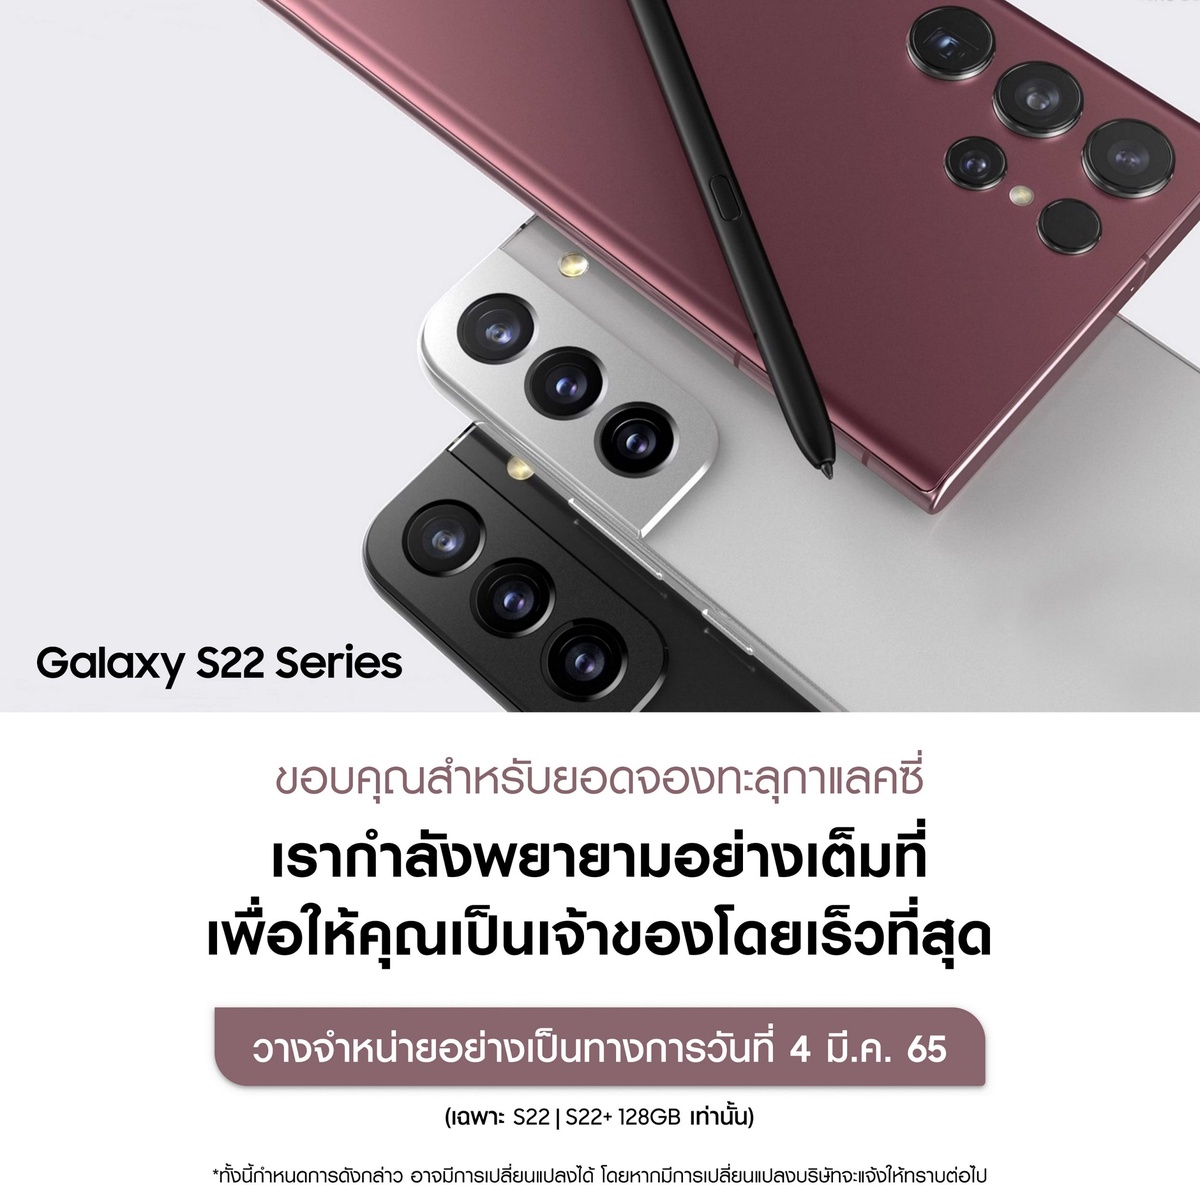 ยอดจองทะลุกาแลคซี่!!! Samsung Galaxy S22 Series สร้างสถิติใหม่ แค่เพียงเปิดจองยอดพุ่ง 3 เท่า!!!